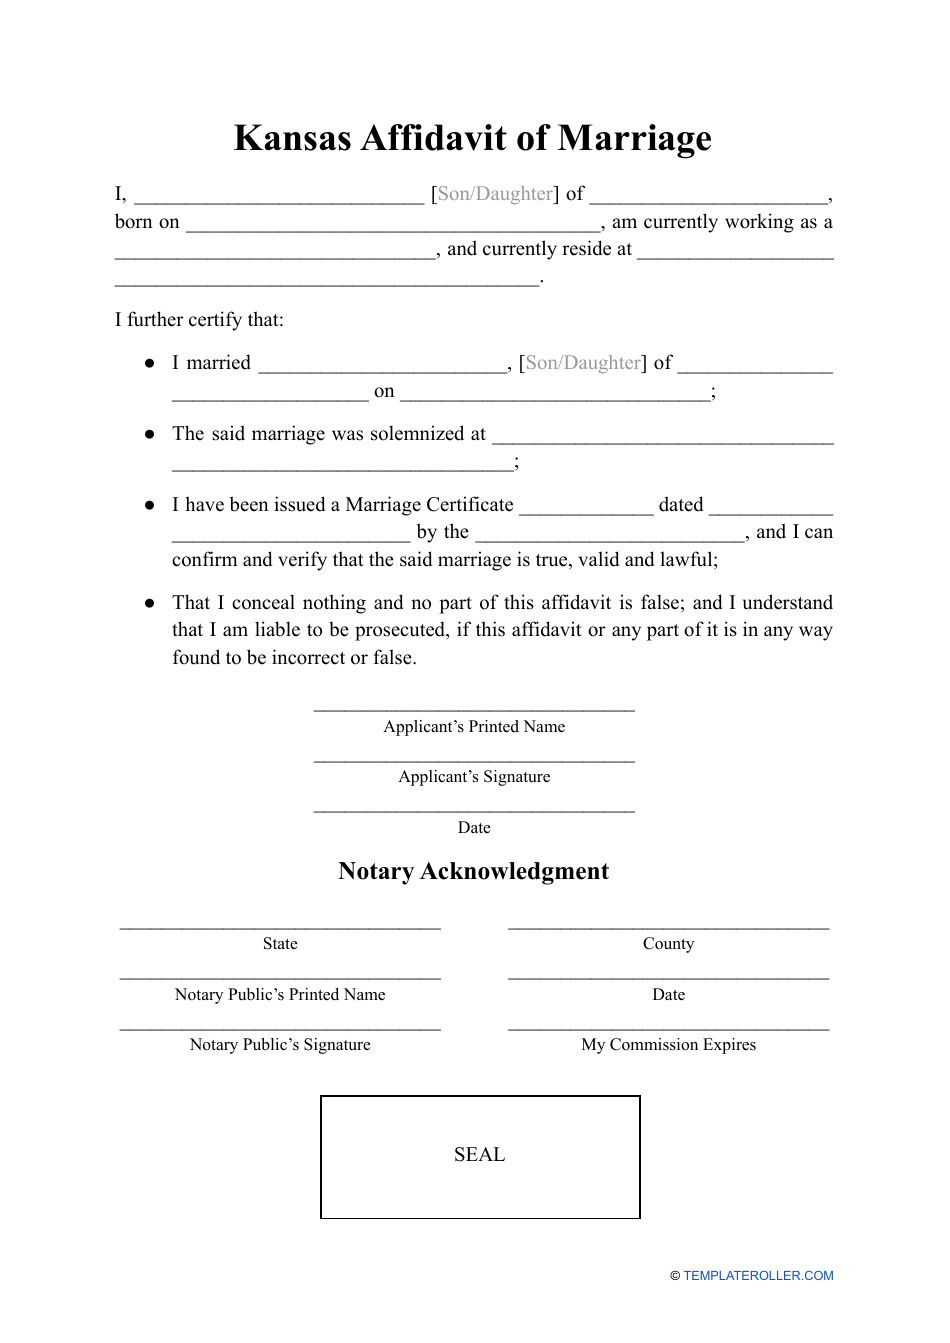 Affidavit of Marriage - Kansas, Page 1